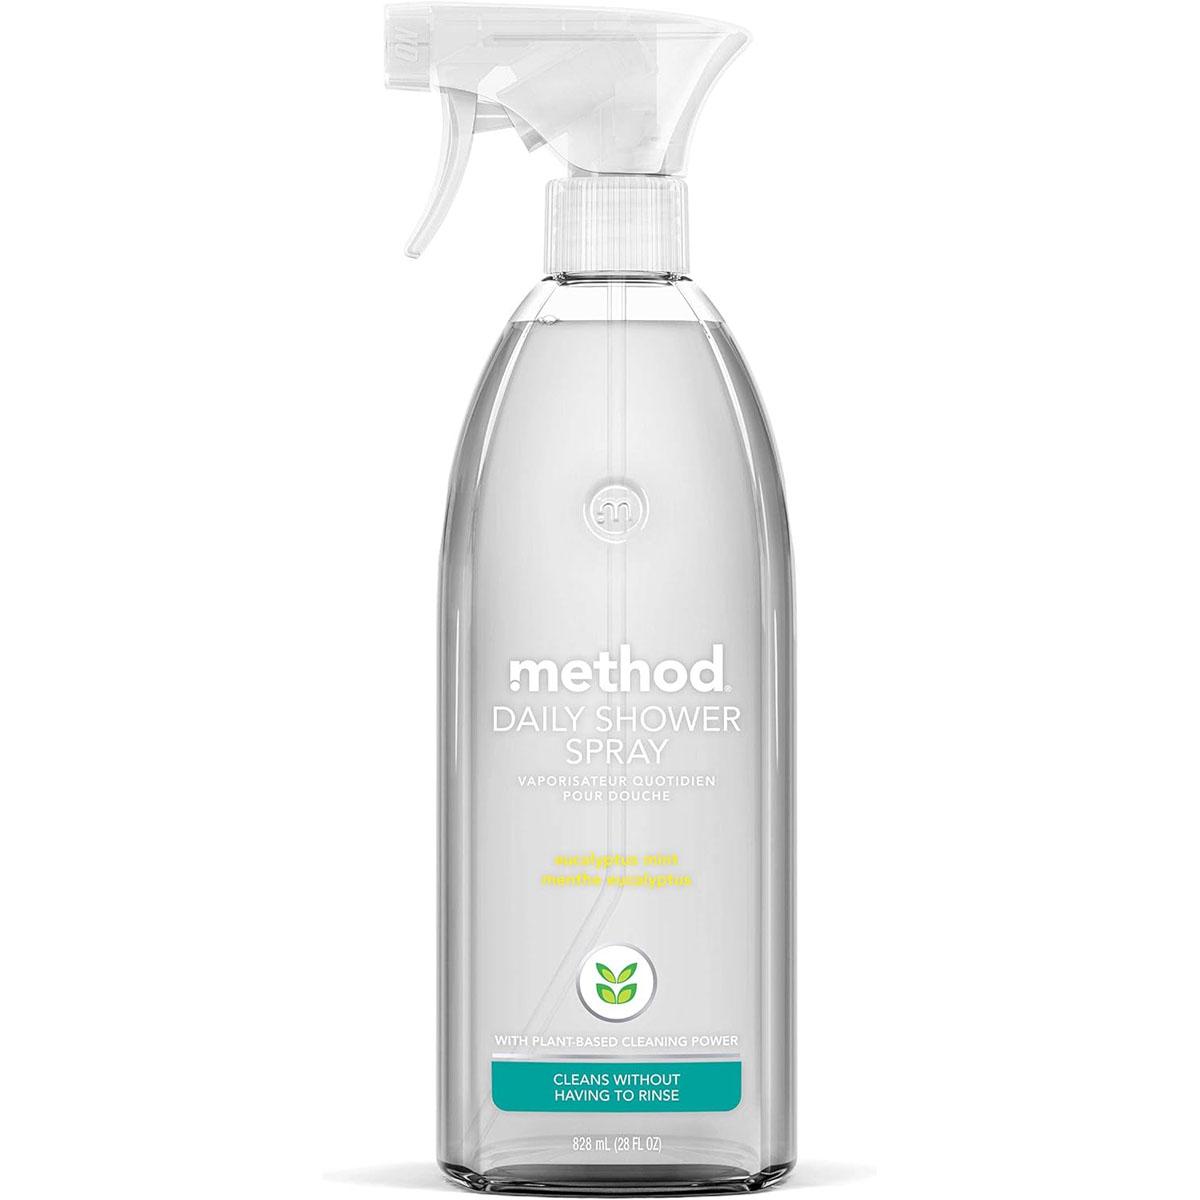 Method Daily Shower Spray Cleaner Eucalyptus Mint for $3.13